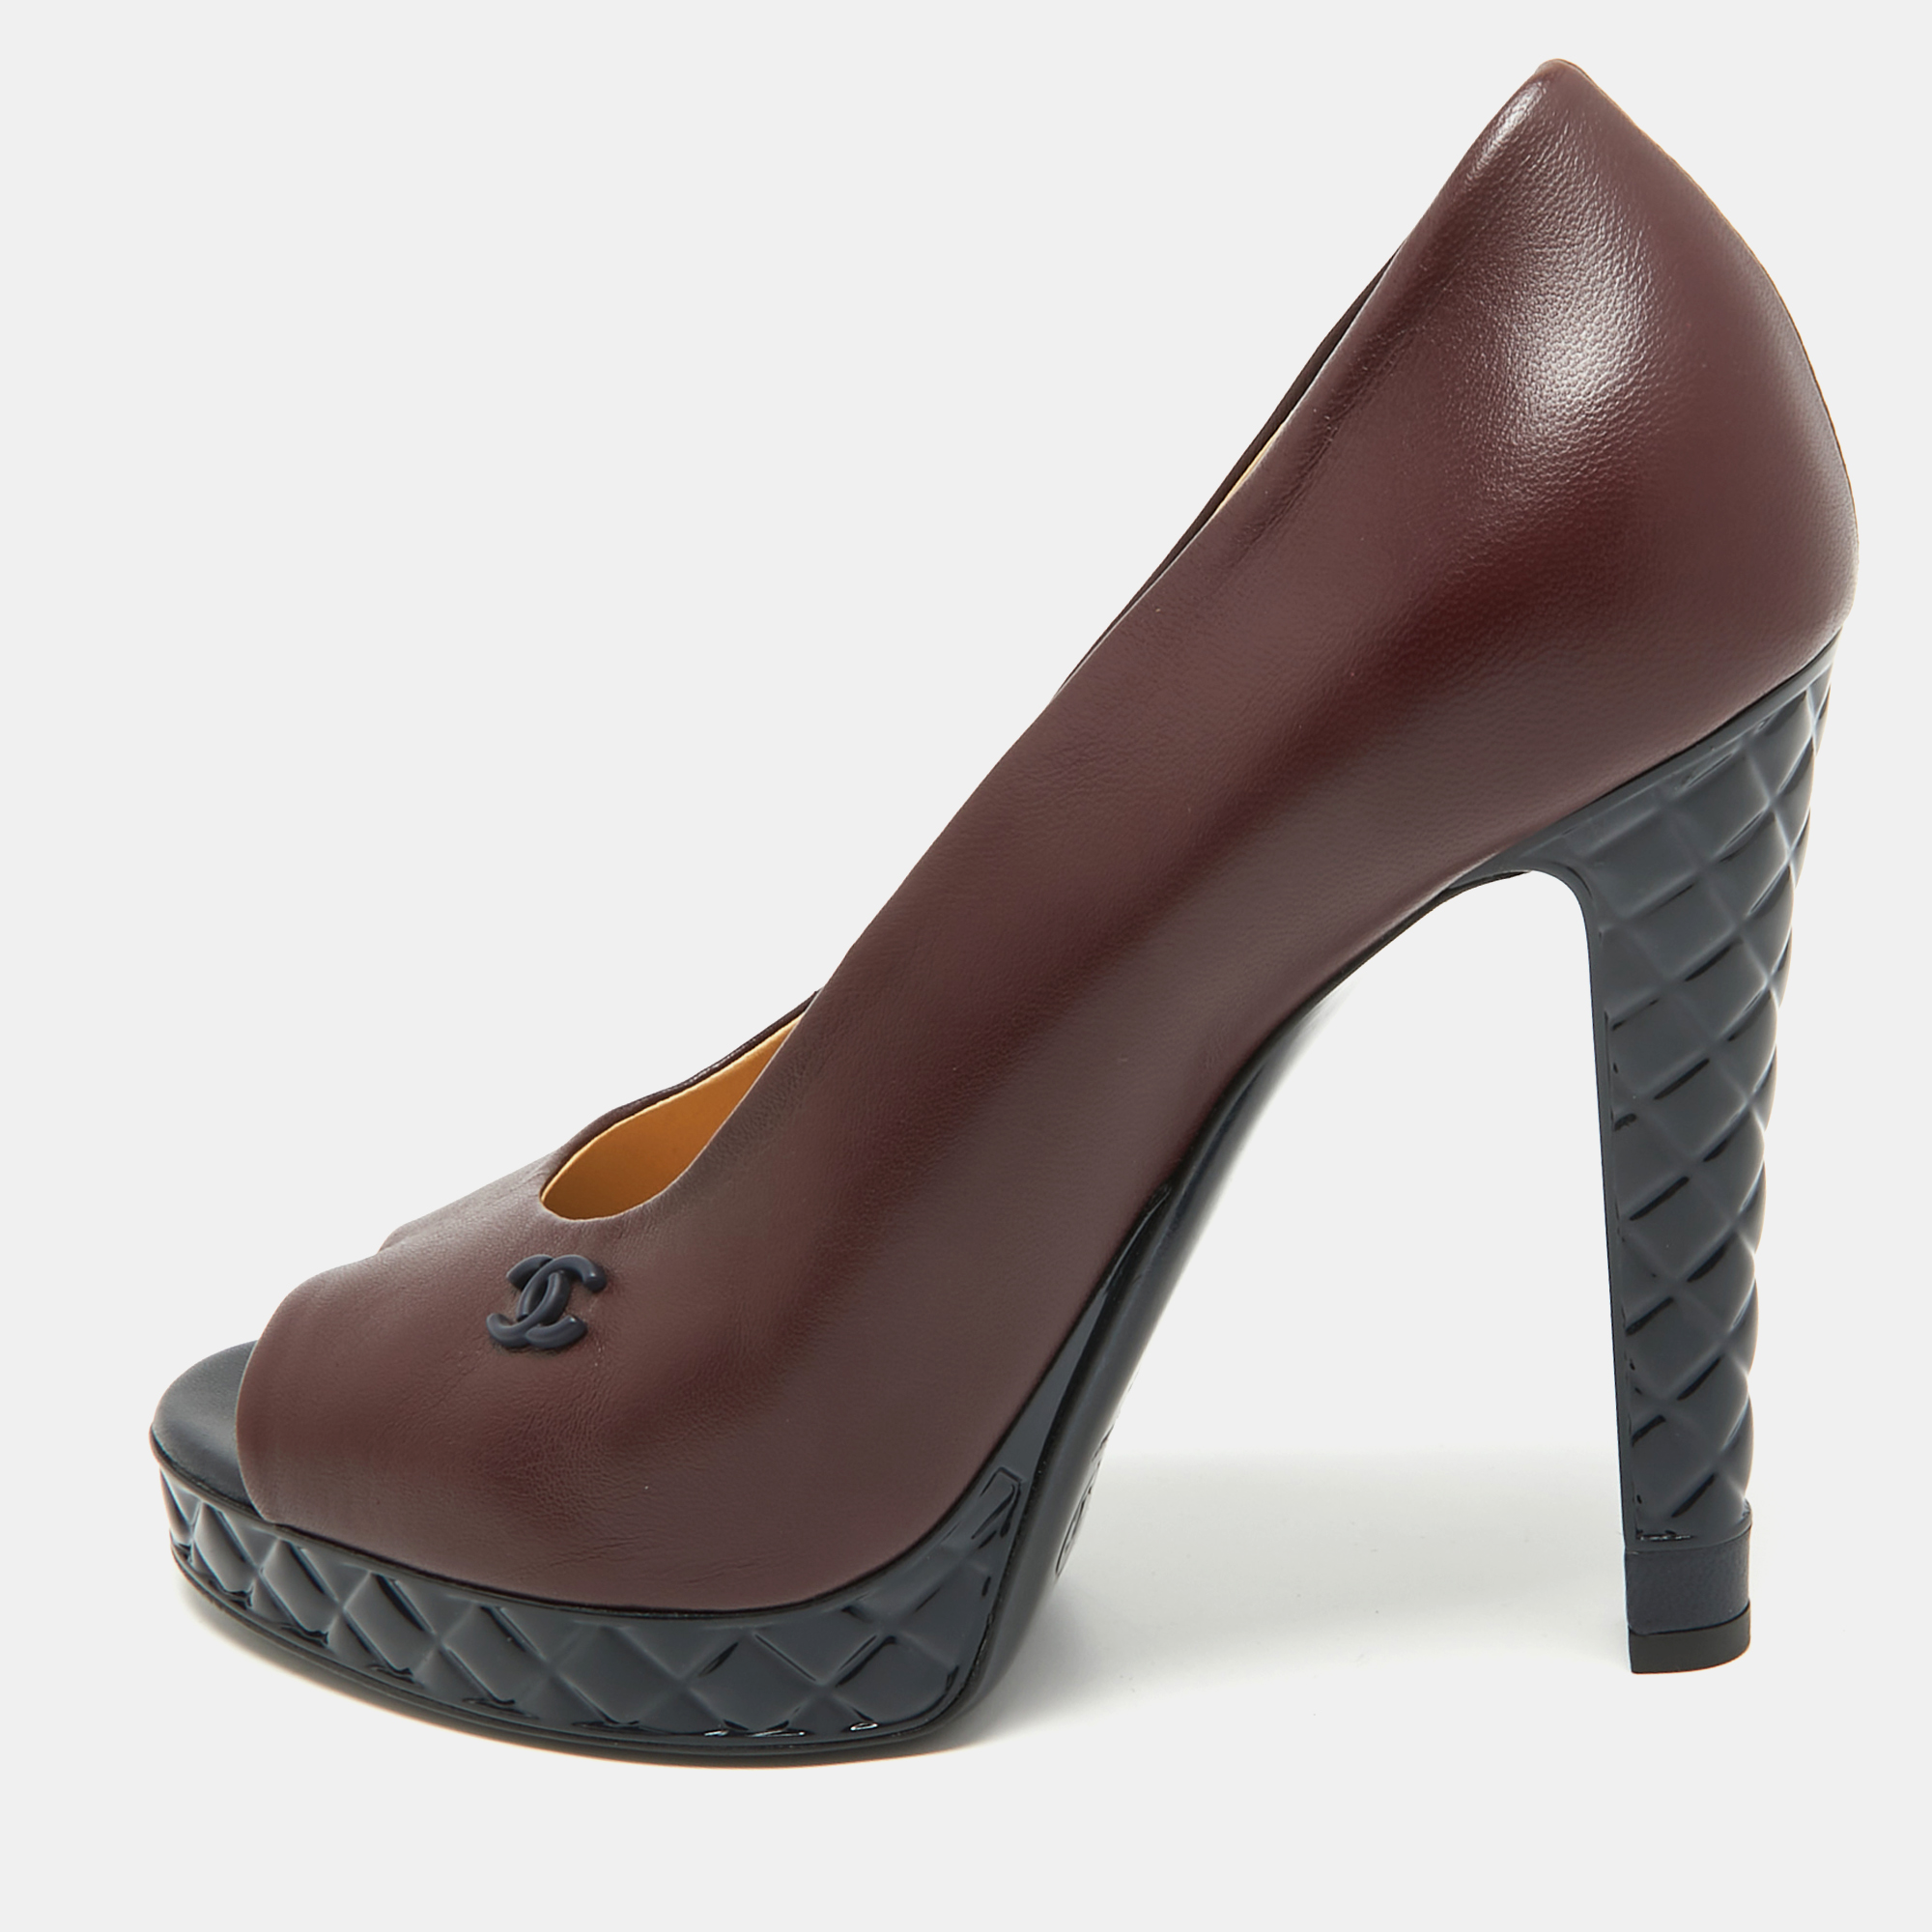 Chanel burgundy leather cc open toe platform pumps size 40